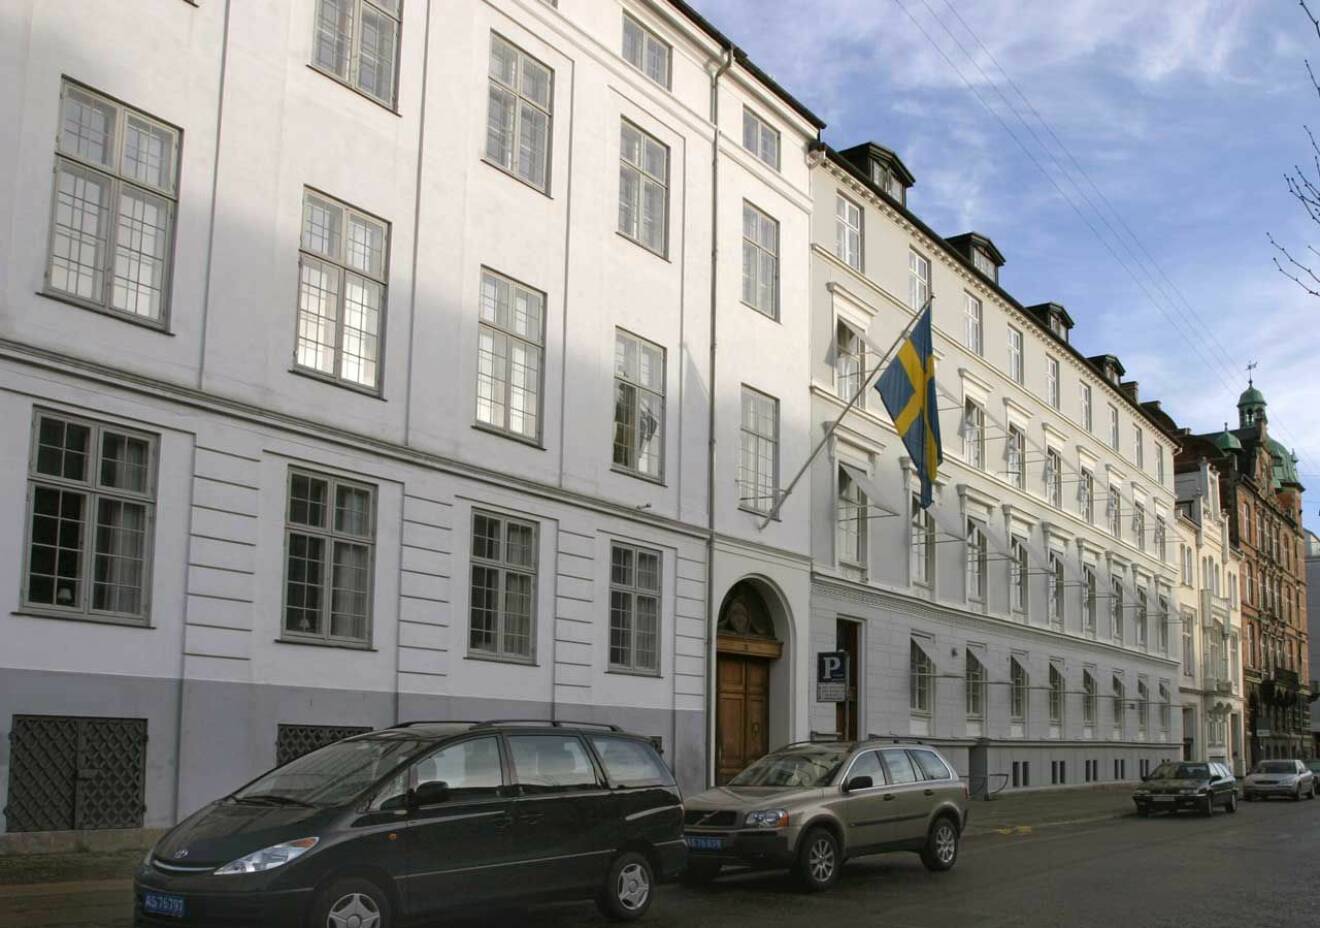 Svenska ambassadörens residens i Köpenhamn.